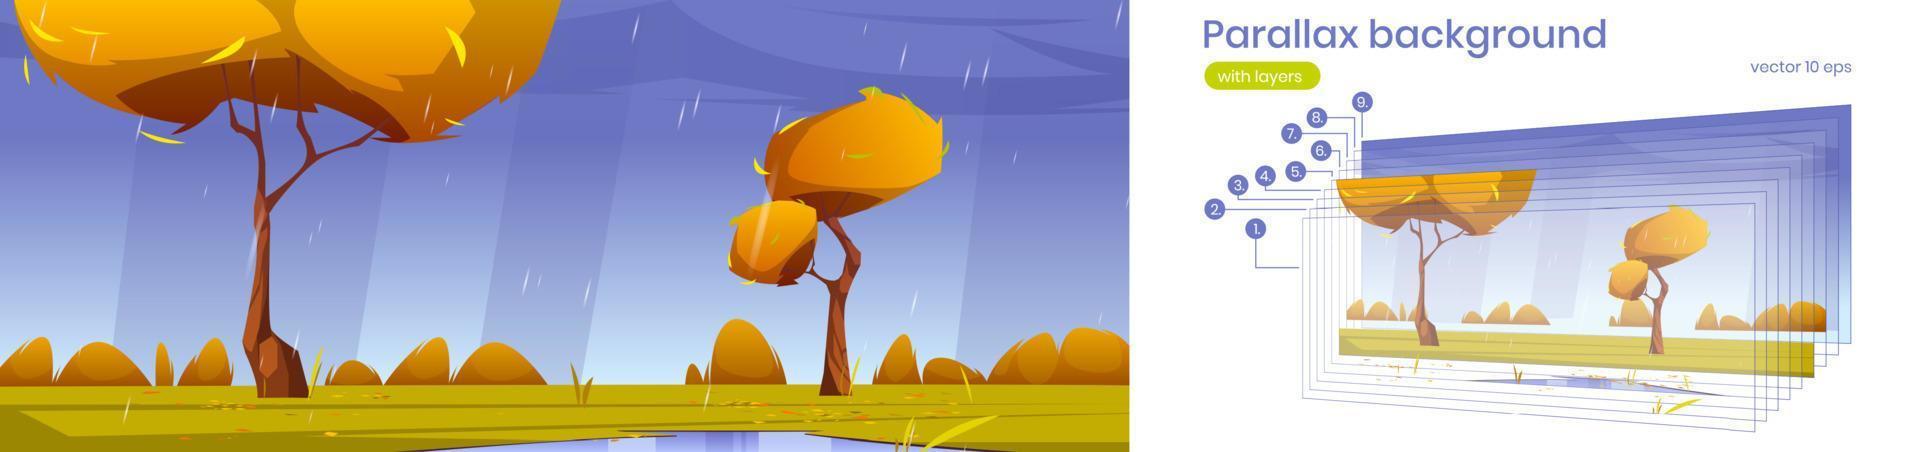 fundo de paralaxe outono chuva desenho animado paisagem vetor